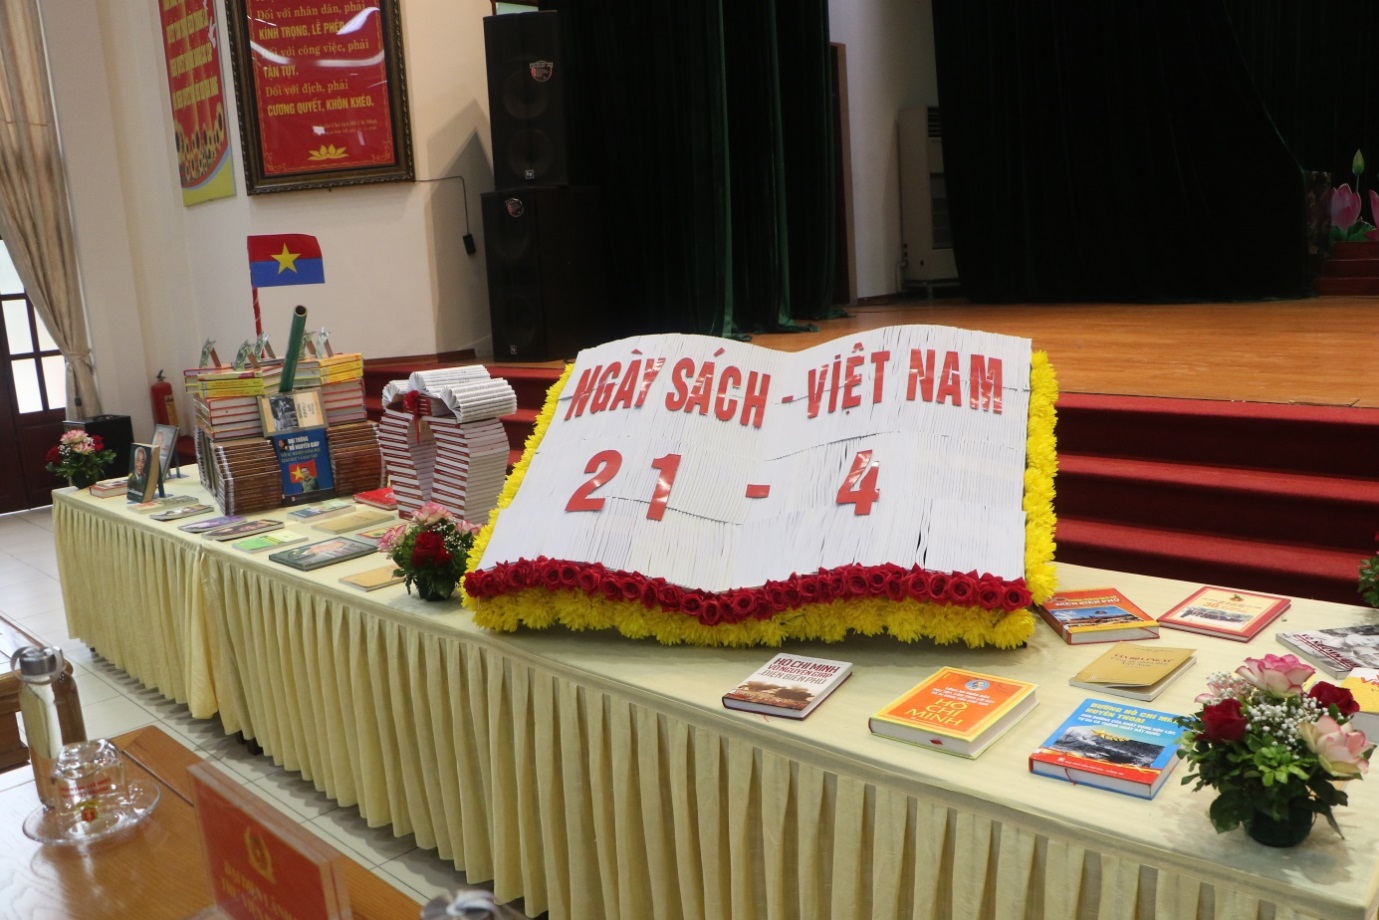 Ý nghĩa của ngày Sách Việt Nam 21/4 và phát triển văn hóa đọc trong Trường Cao đẳng Cảnh sát nhân dân I